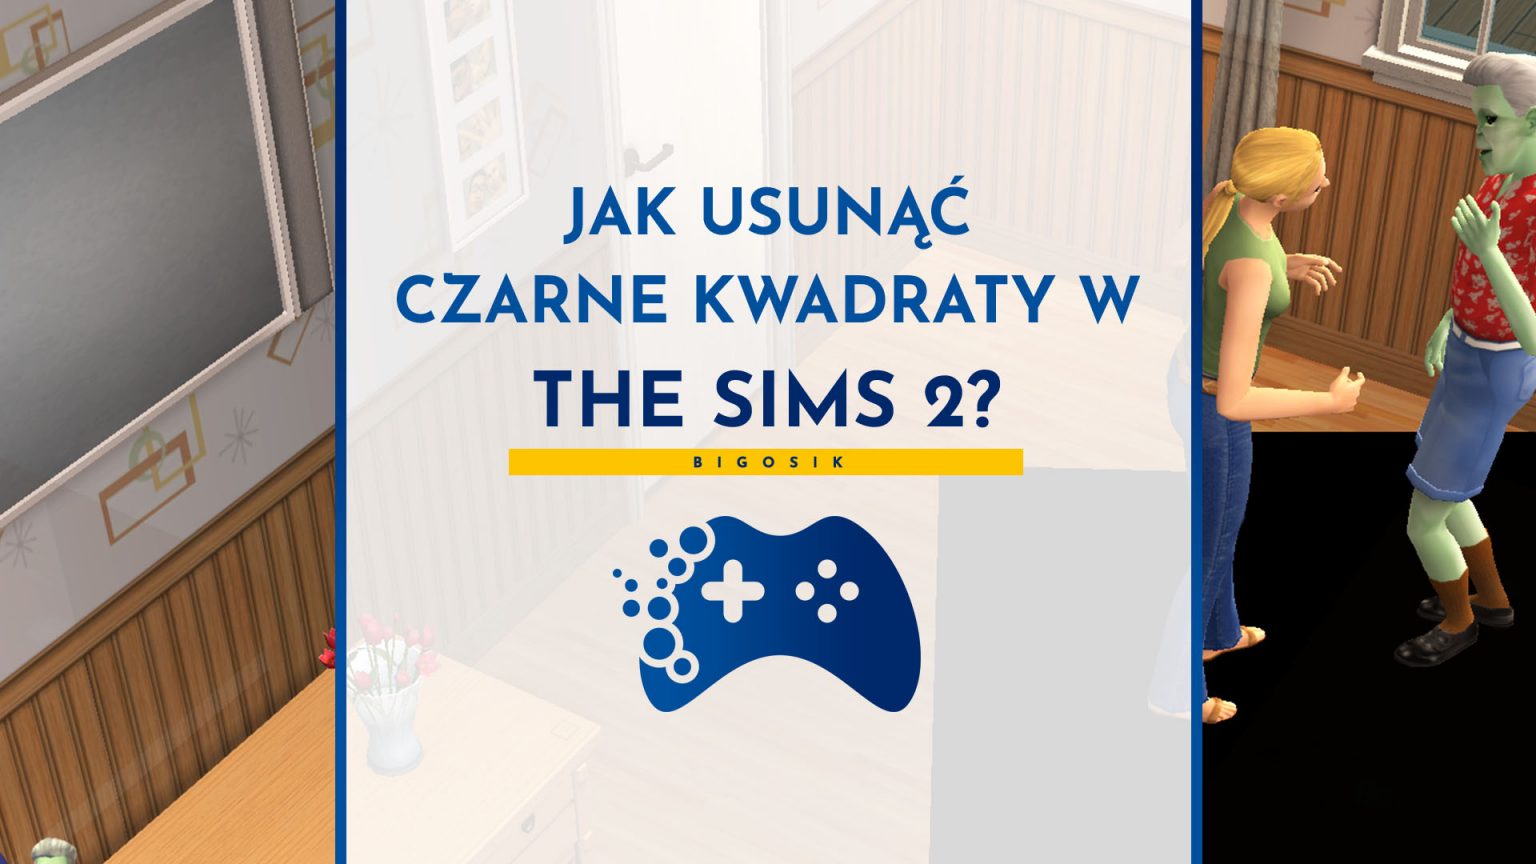 The Sims 2 Jak Zostać Wiedźmą Jak usunąć czarne kwadraty pod simami w The Sims 2? - Portal dla graczy